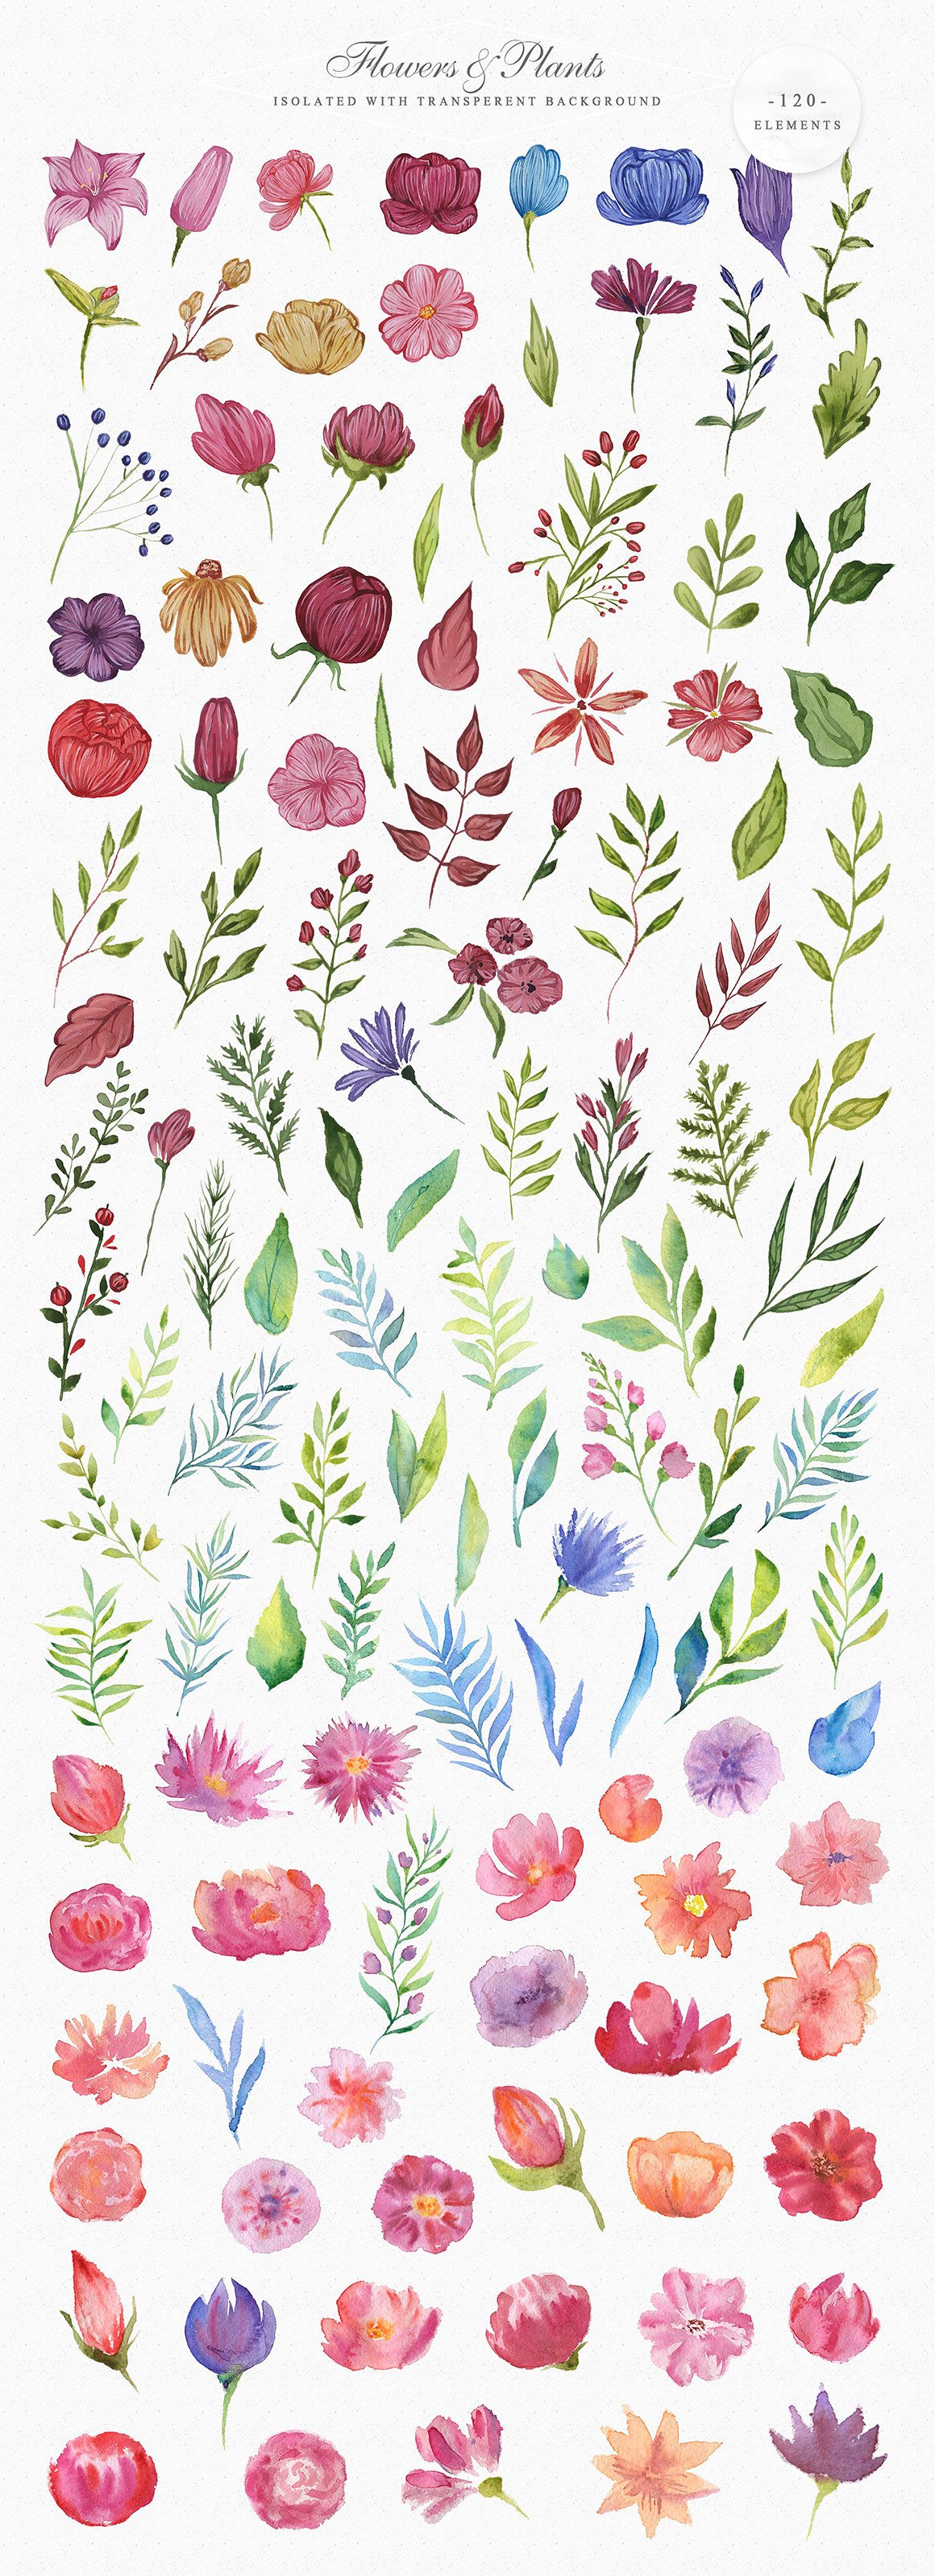 Spring Garden Watercolor Collection